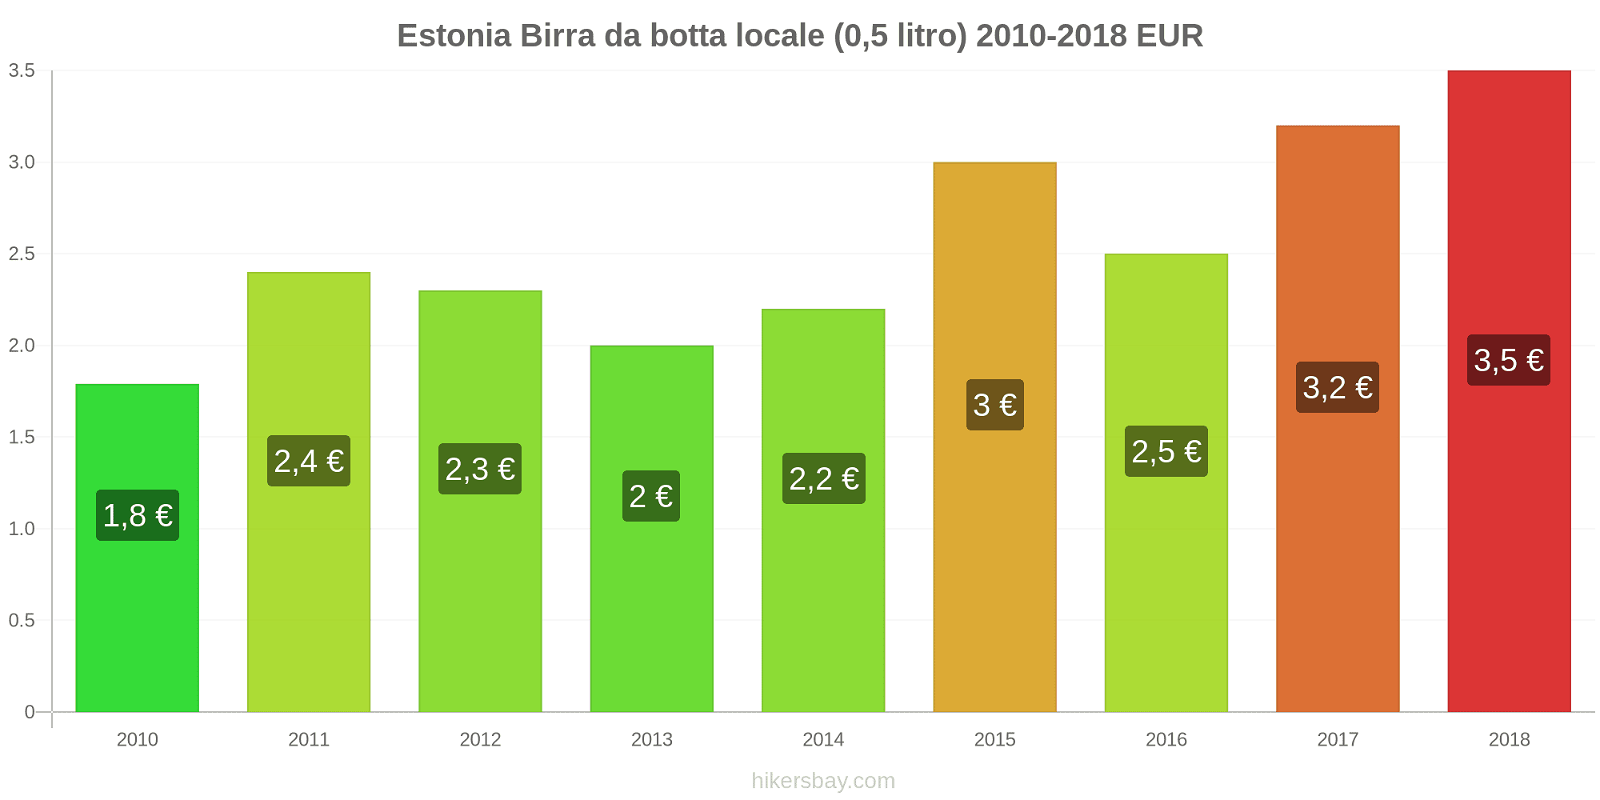 Estonia cambi di prezzo Birra alla spina (0,5 litri) hikersbay.com